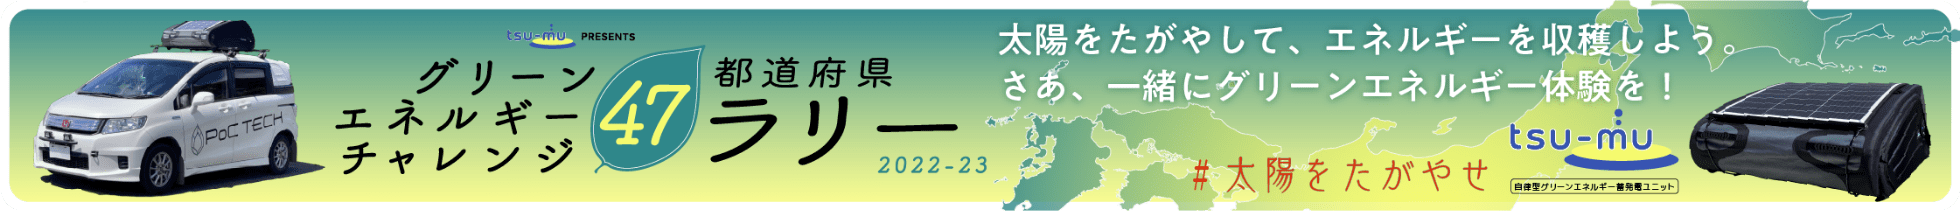 グリーンエネルギーチャレンジ47都道府県ラリー 2022-23 太陽をたがやして、エネルギーを収穫しよう。さあ、一緒にグリーンエネルギー体験を！